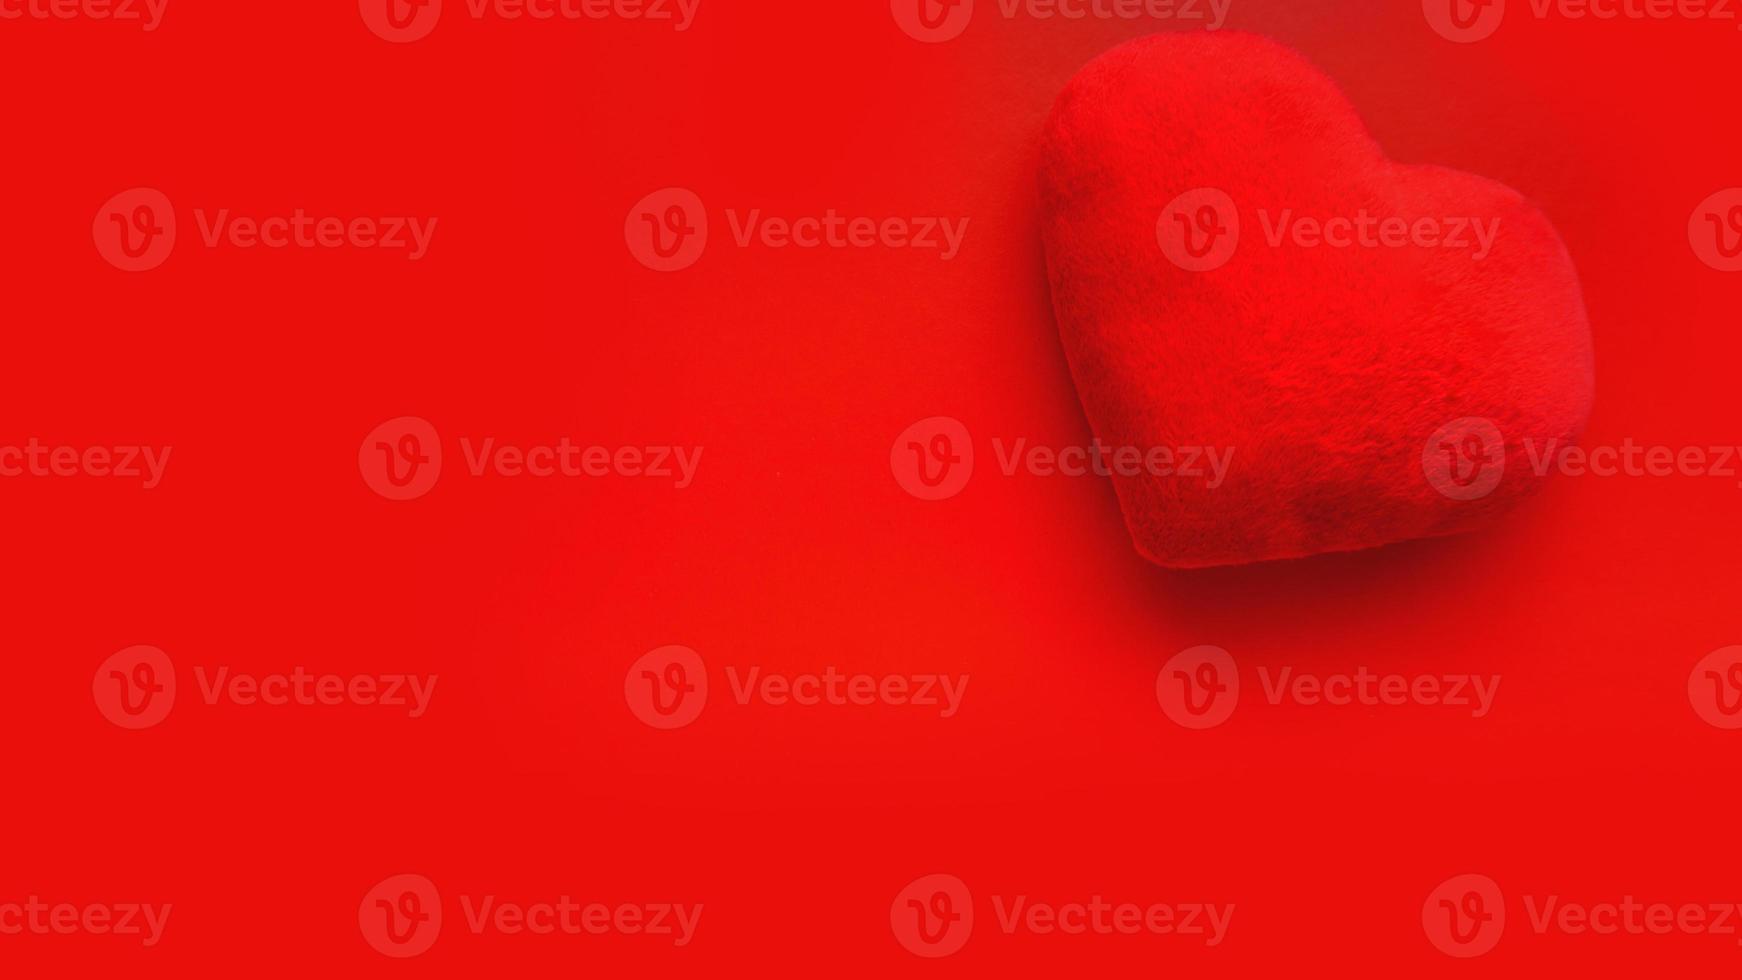 fond d'amour saint valentin avec coeur de peluche sur fond rouge photo